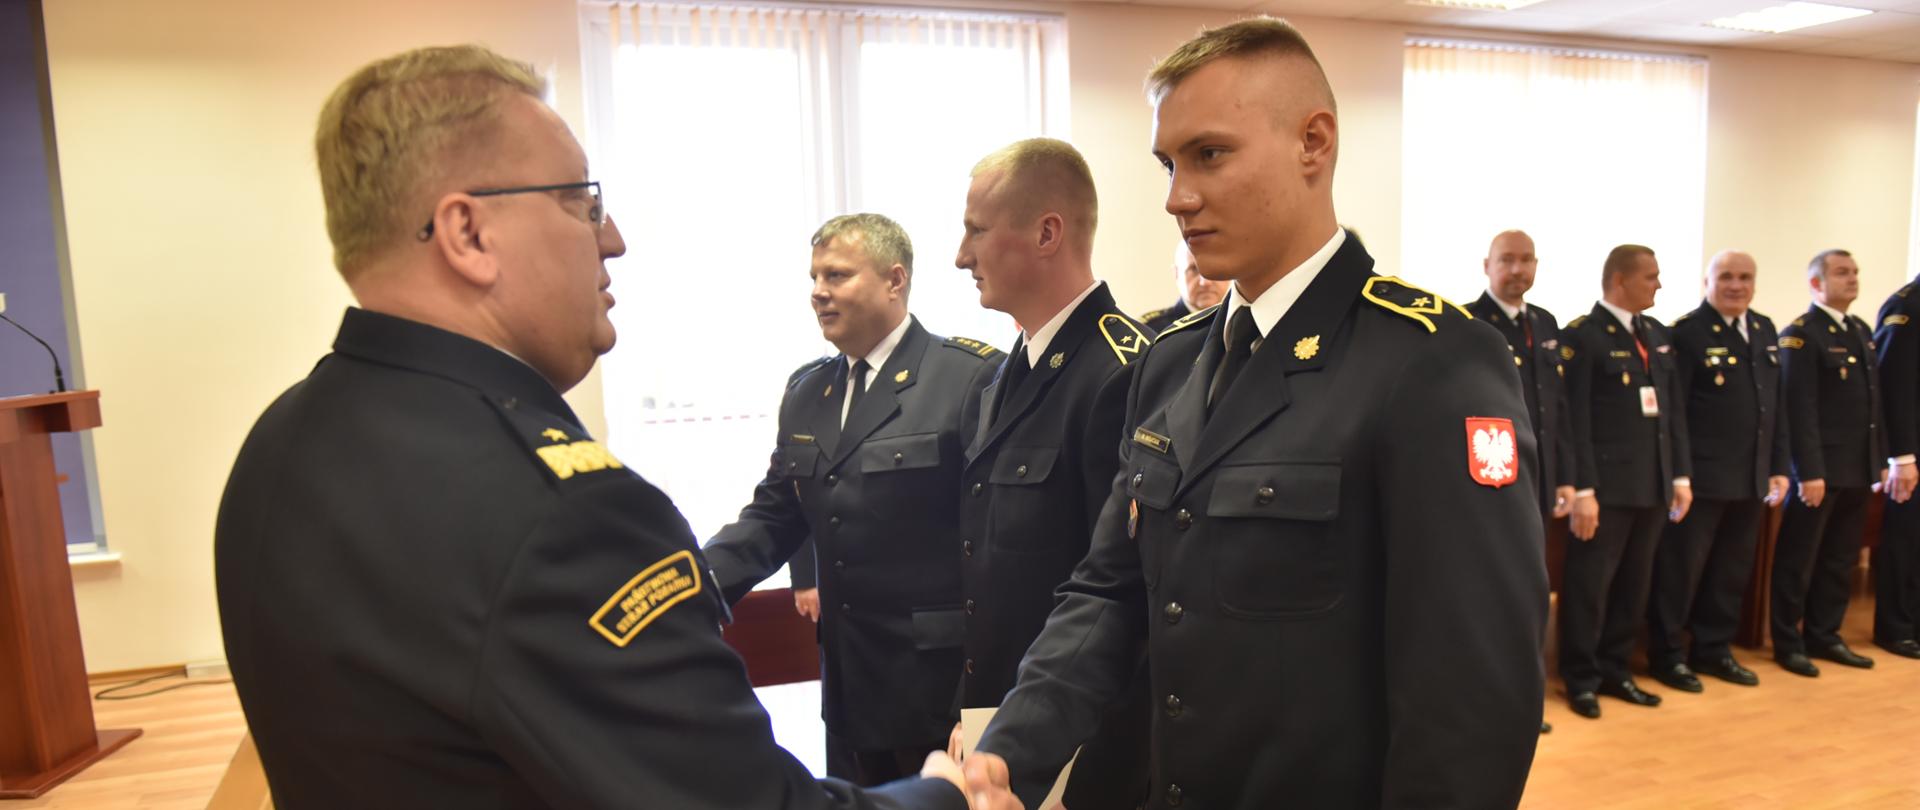 Na pierwszym planie Łódzki Komendant Wojewódzki gratuluje jednemu z młodszych aspirantów podjęcia stałej służby w szeregach Państwowej Straży Pożarnej. W tle stoją Komendanci Powiatowi Państwowej Straży Pożarnej.